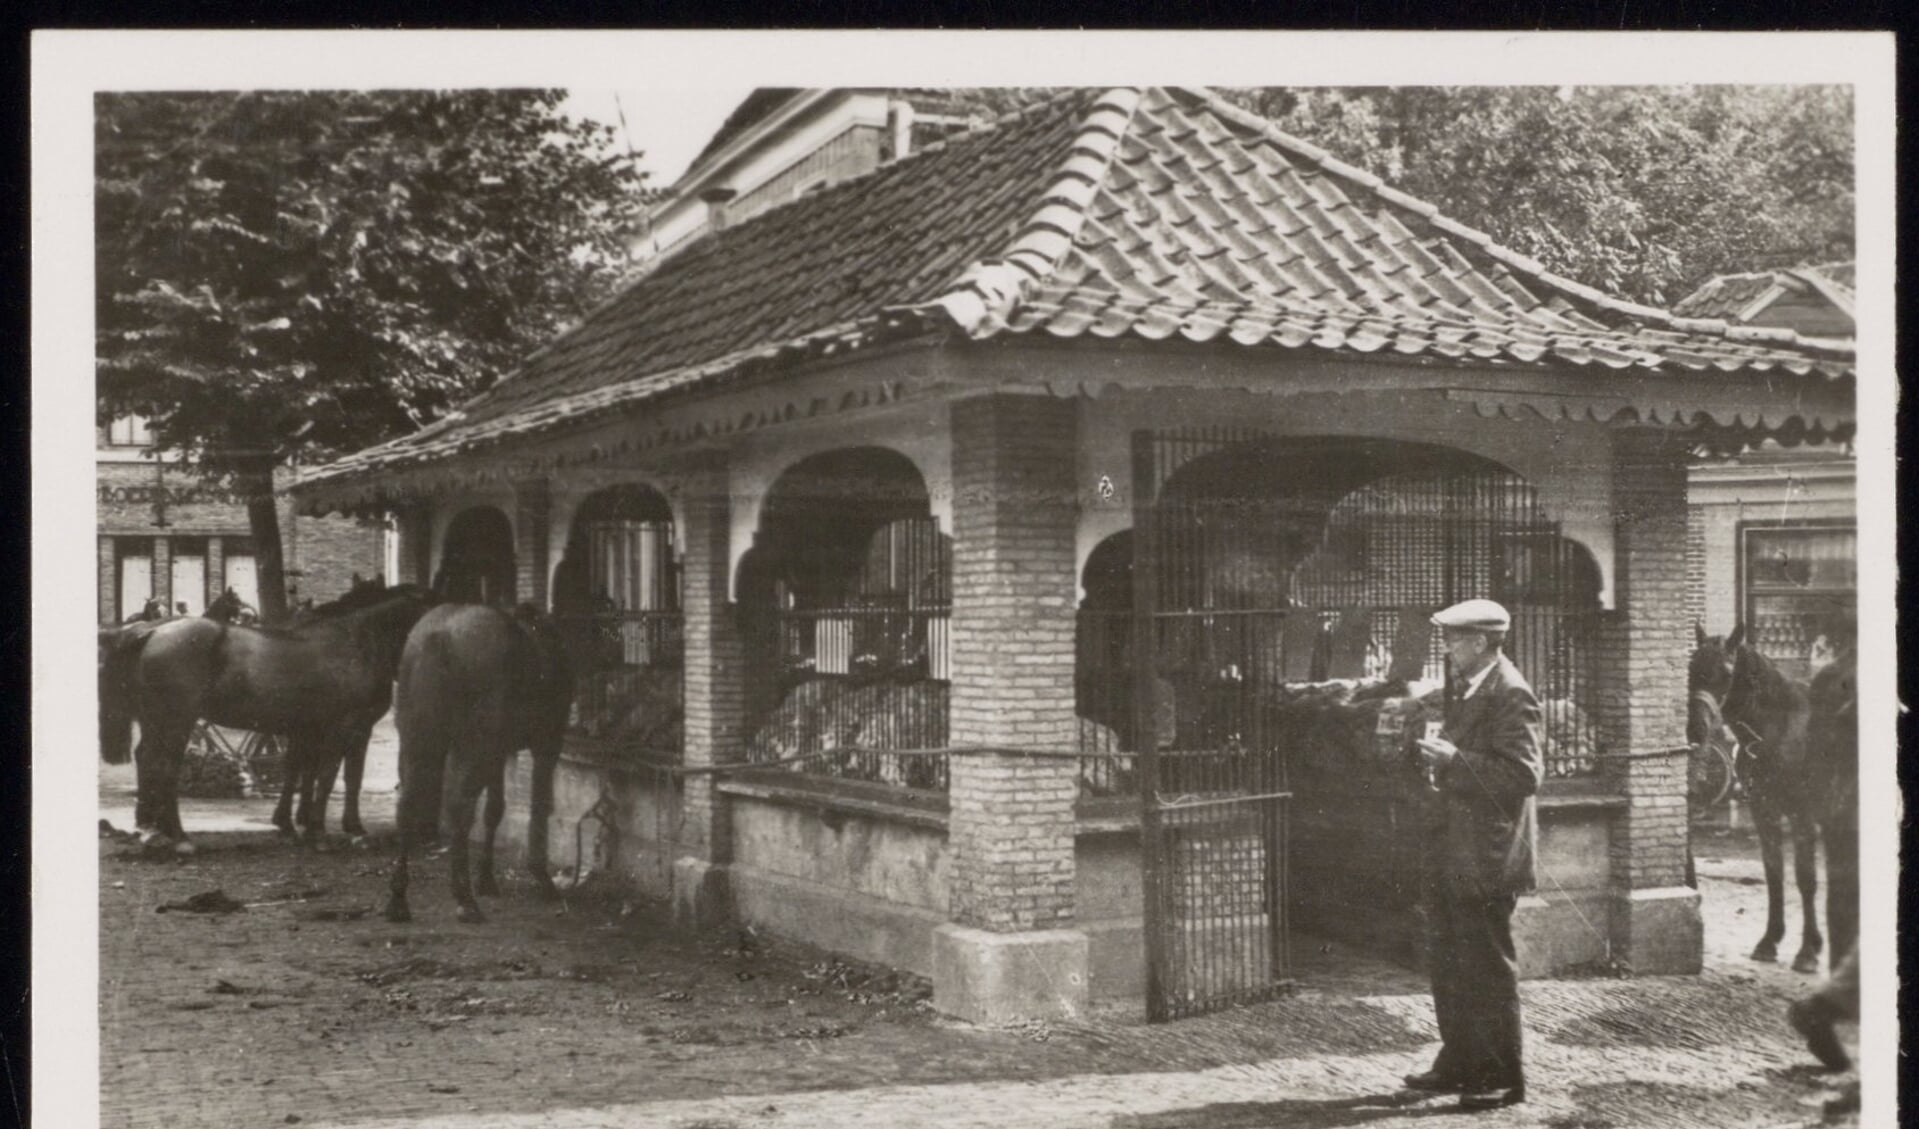 De Waag in de jaren ’30. Op de vensterbanken ligt wol opgetast. (Noord-Hollands archief).